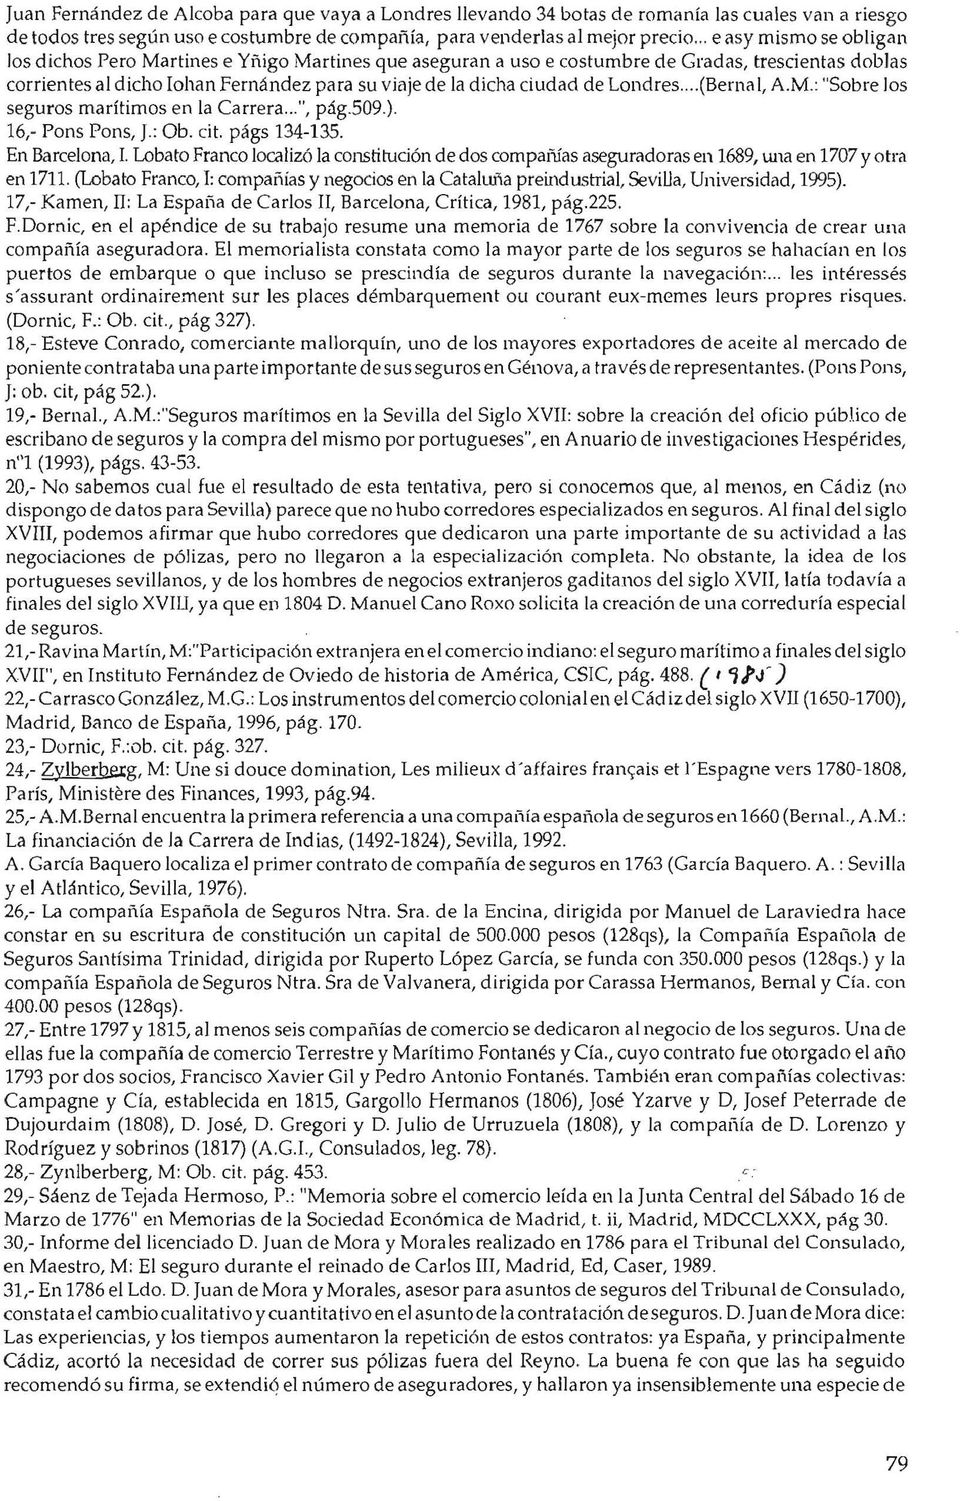 de Londres....(Bernal, A.M.: "Sobre los seguros marítimos en la Carrera...", pág.509.). 16,- Pon s Pons, J.: Ob. cit. págs 134-135. En Barcelona, l.